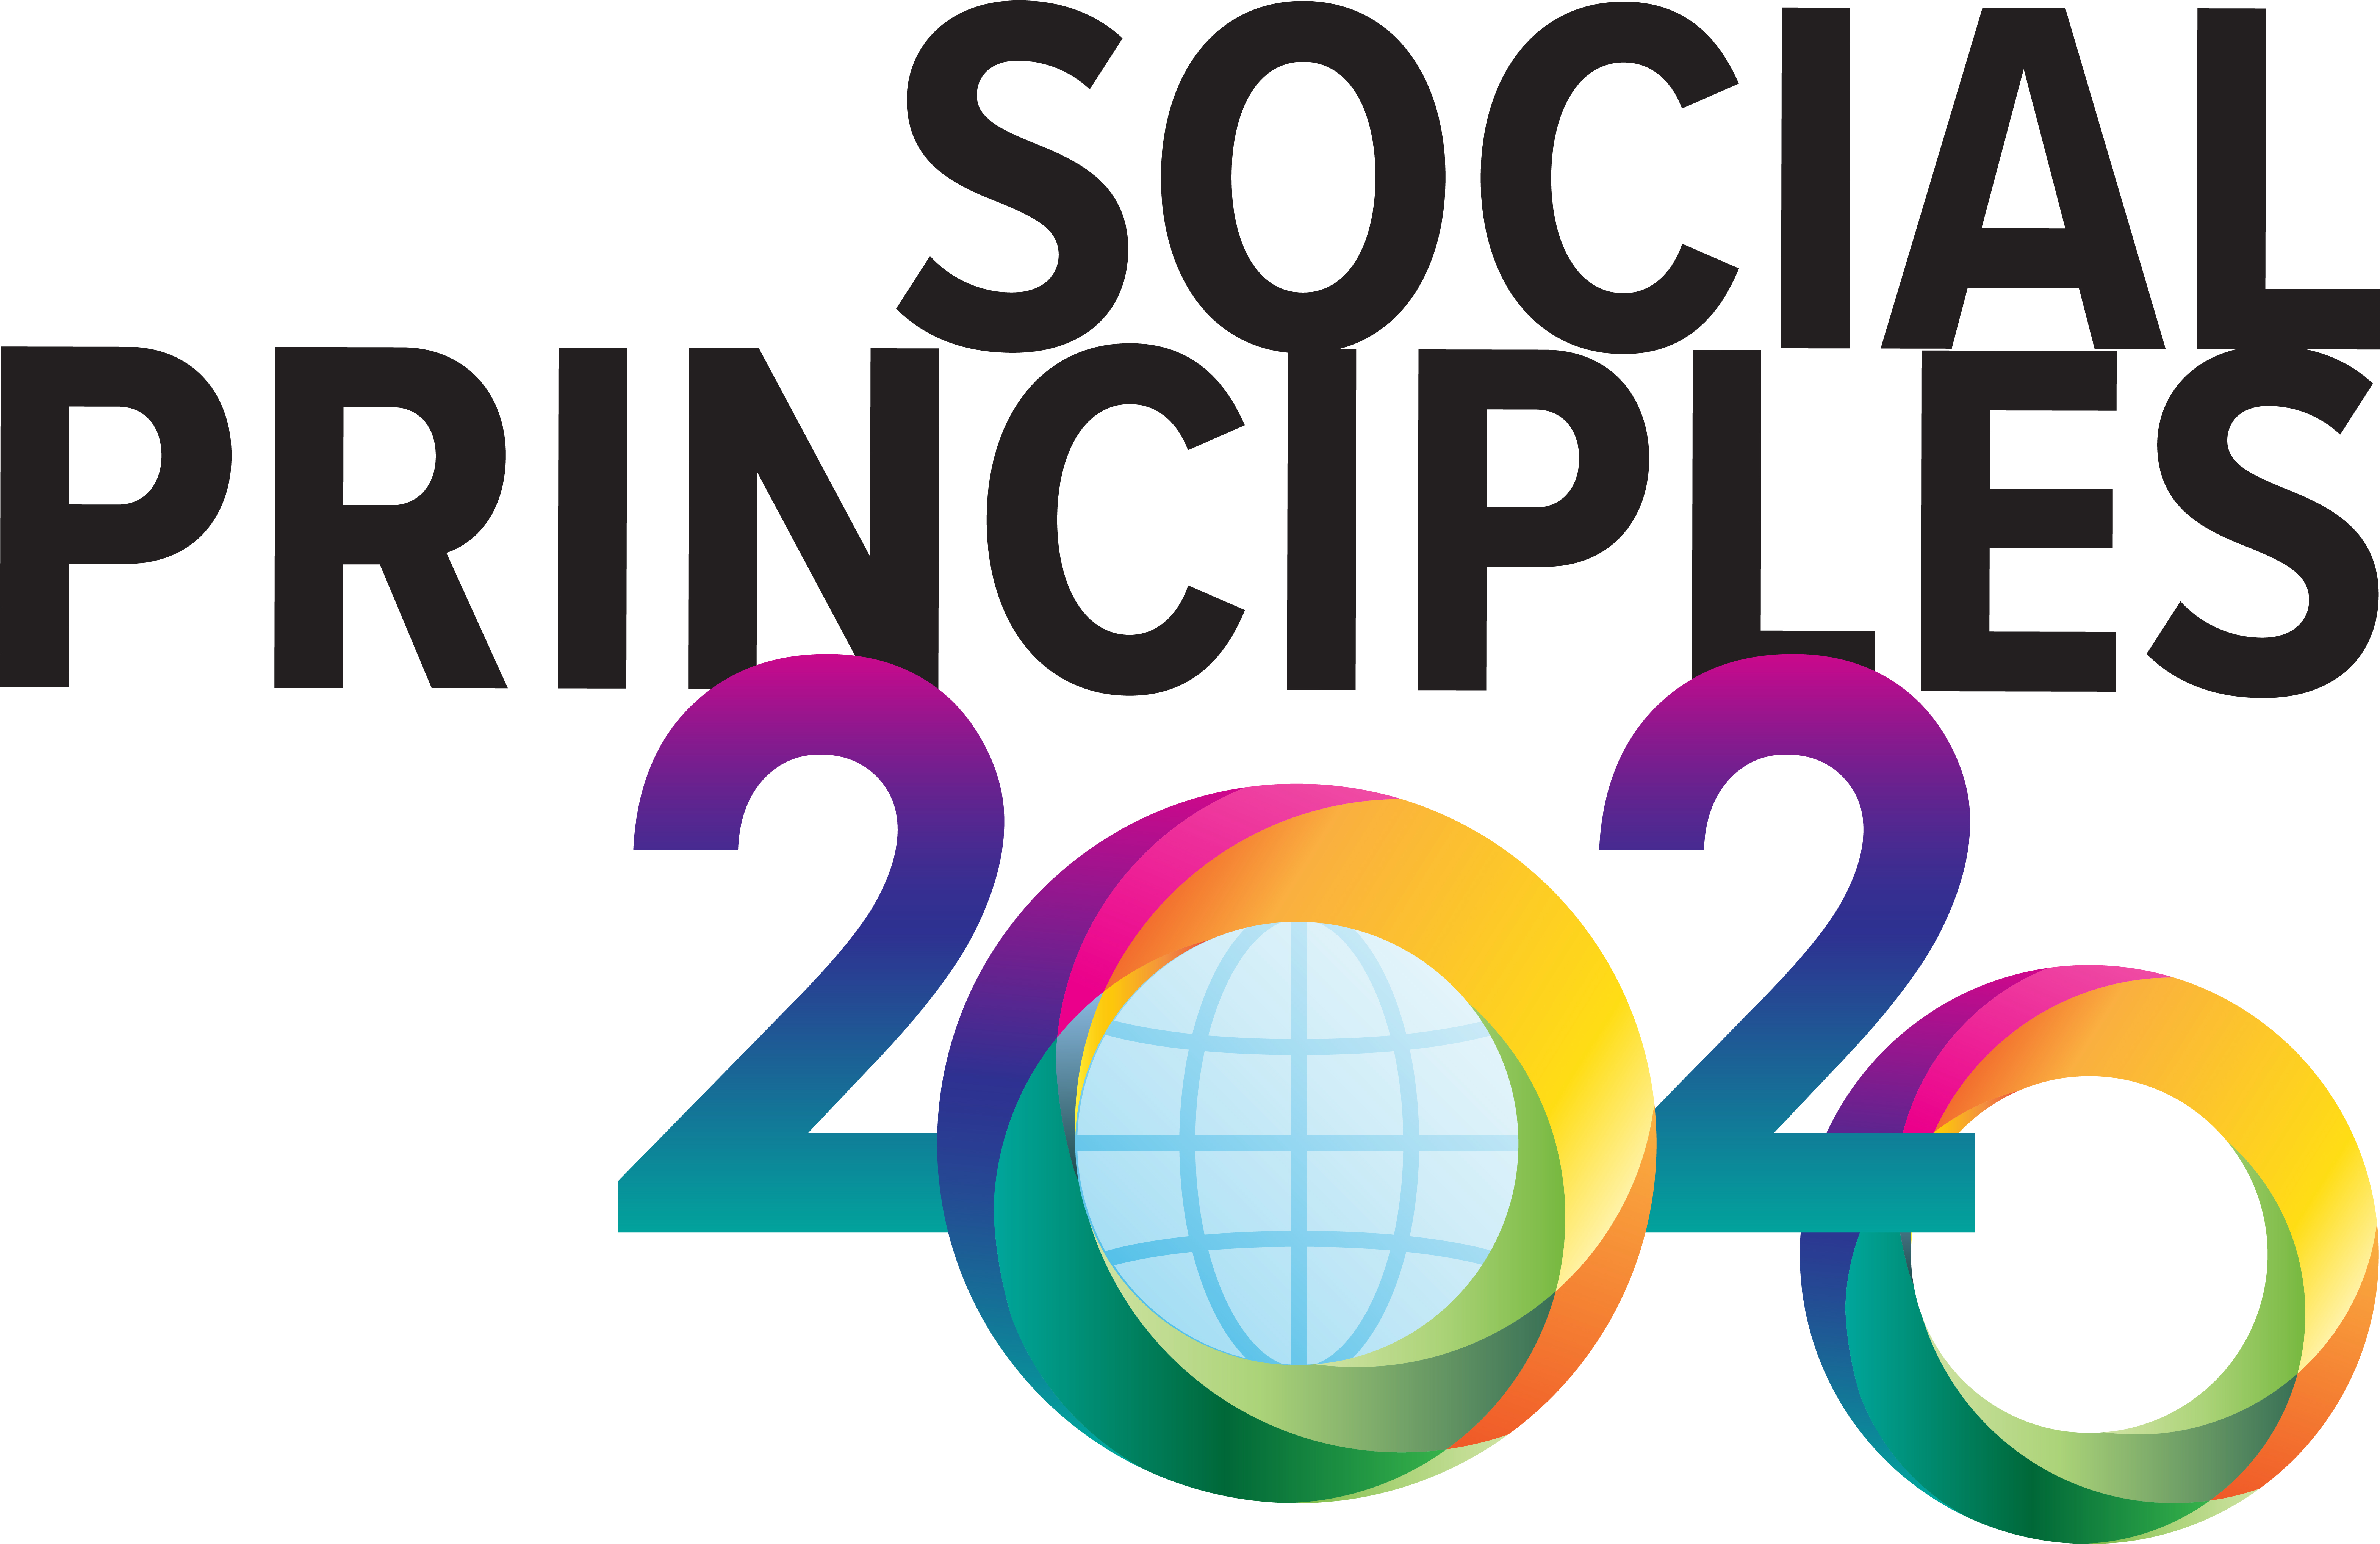 Social Prinicples 2020 logo